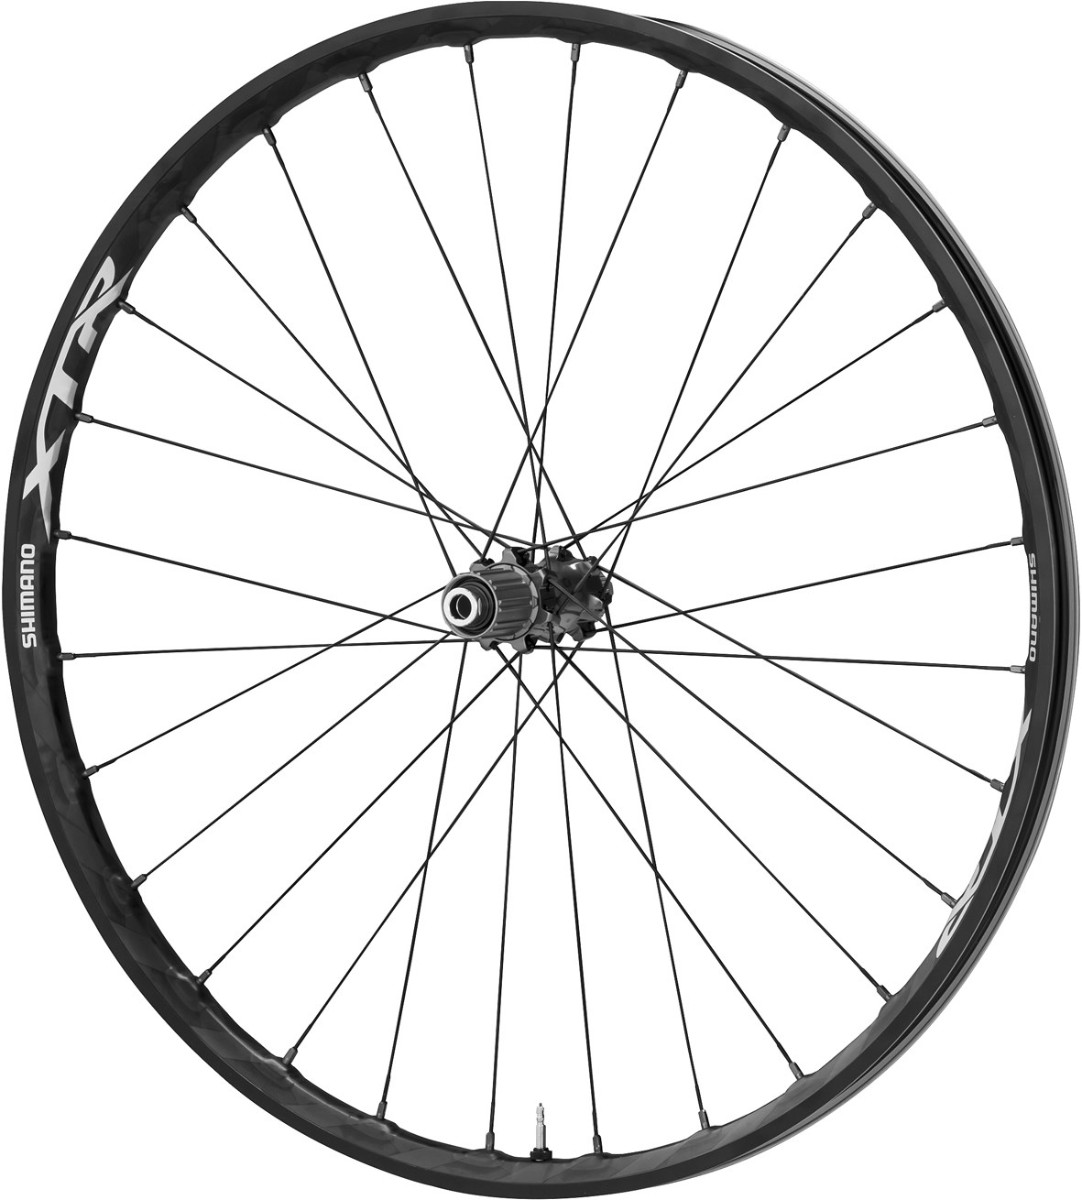 Shimano XTR 29er Rear Mountain Bike Wheel, 12 x 142mm Axle, Carbon Clincher